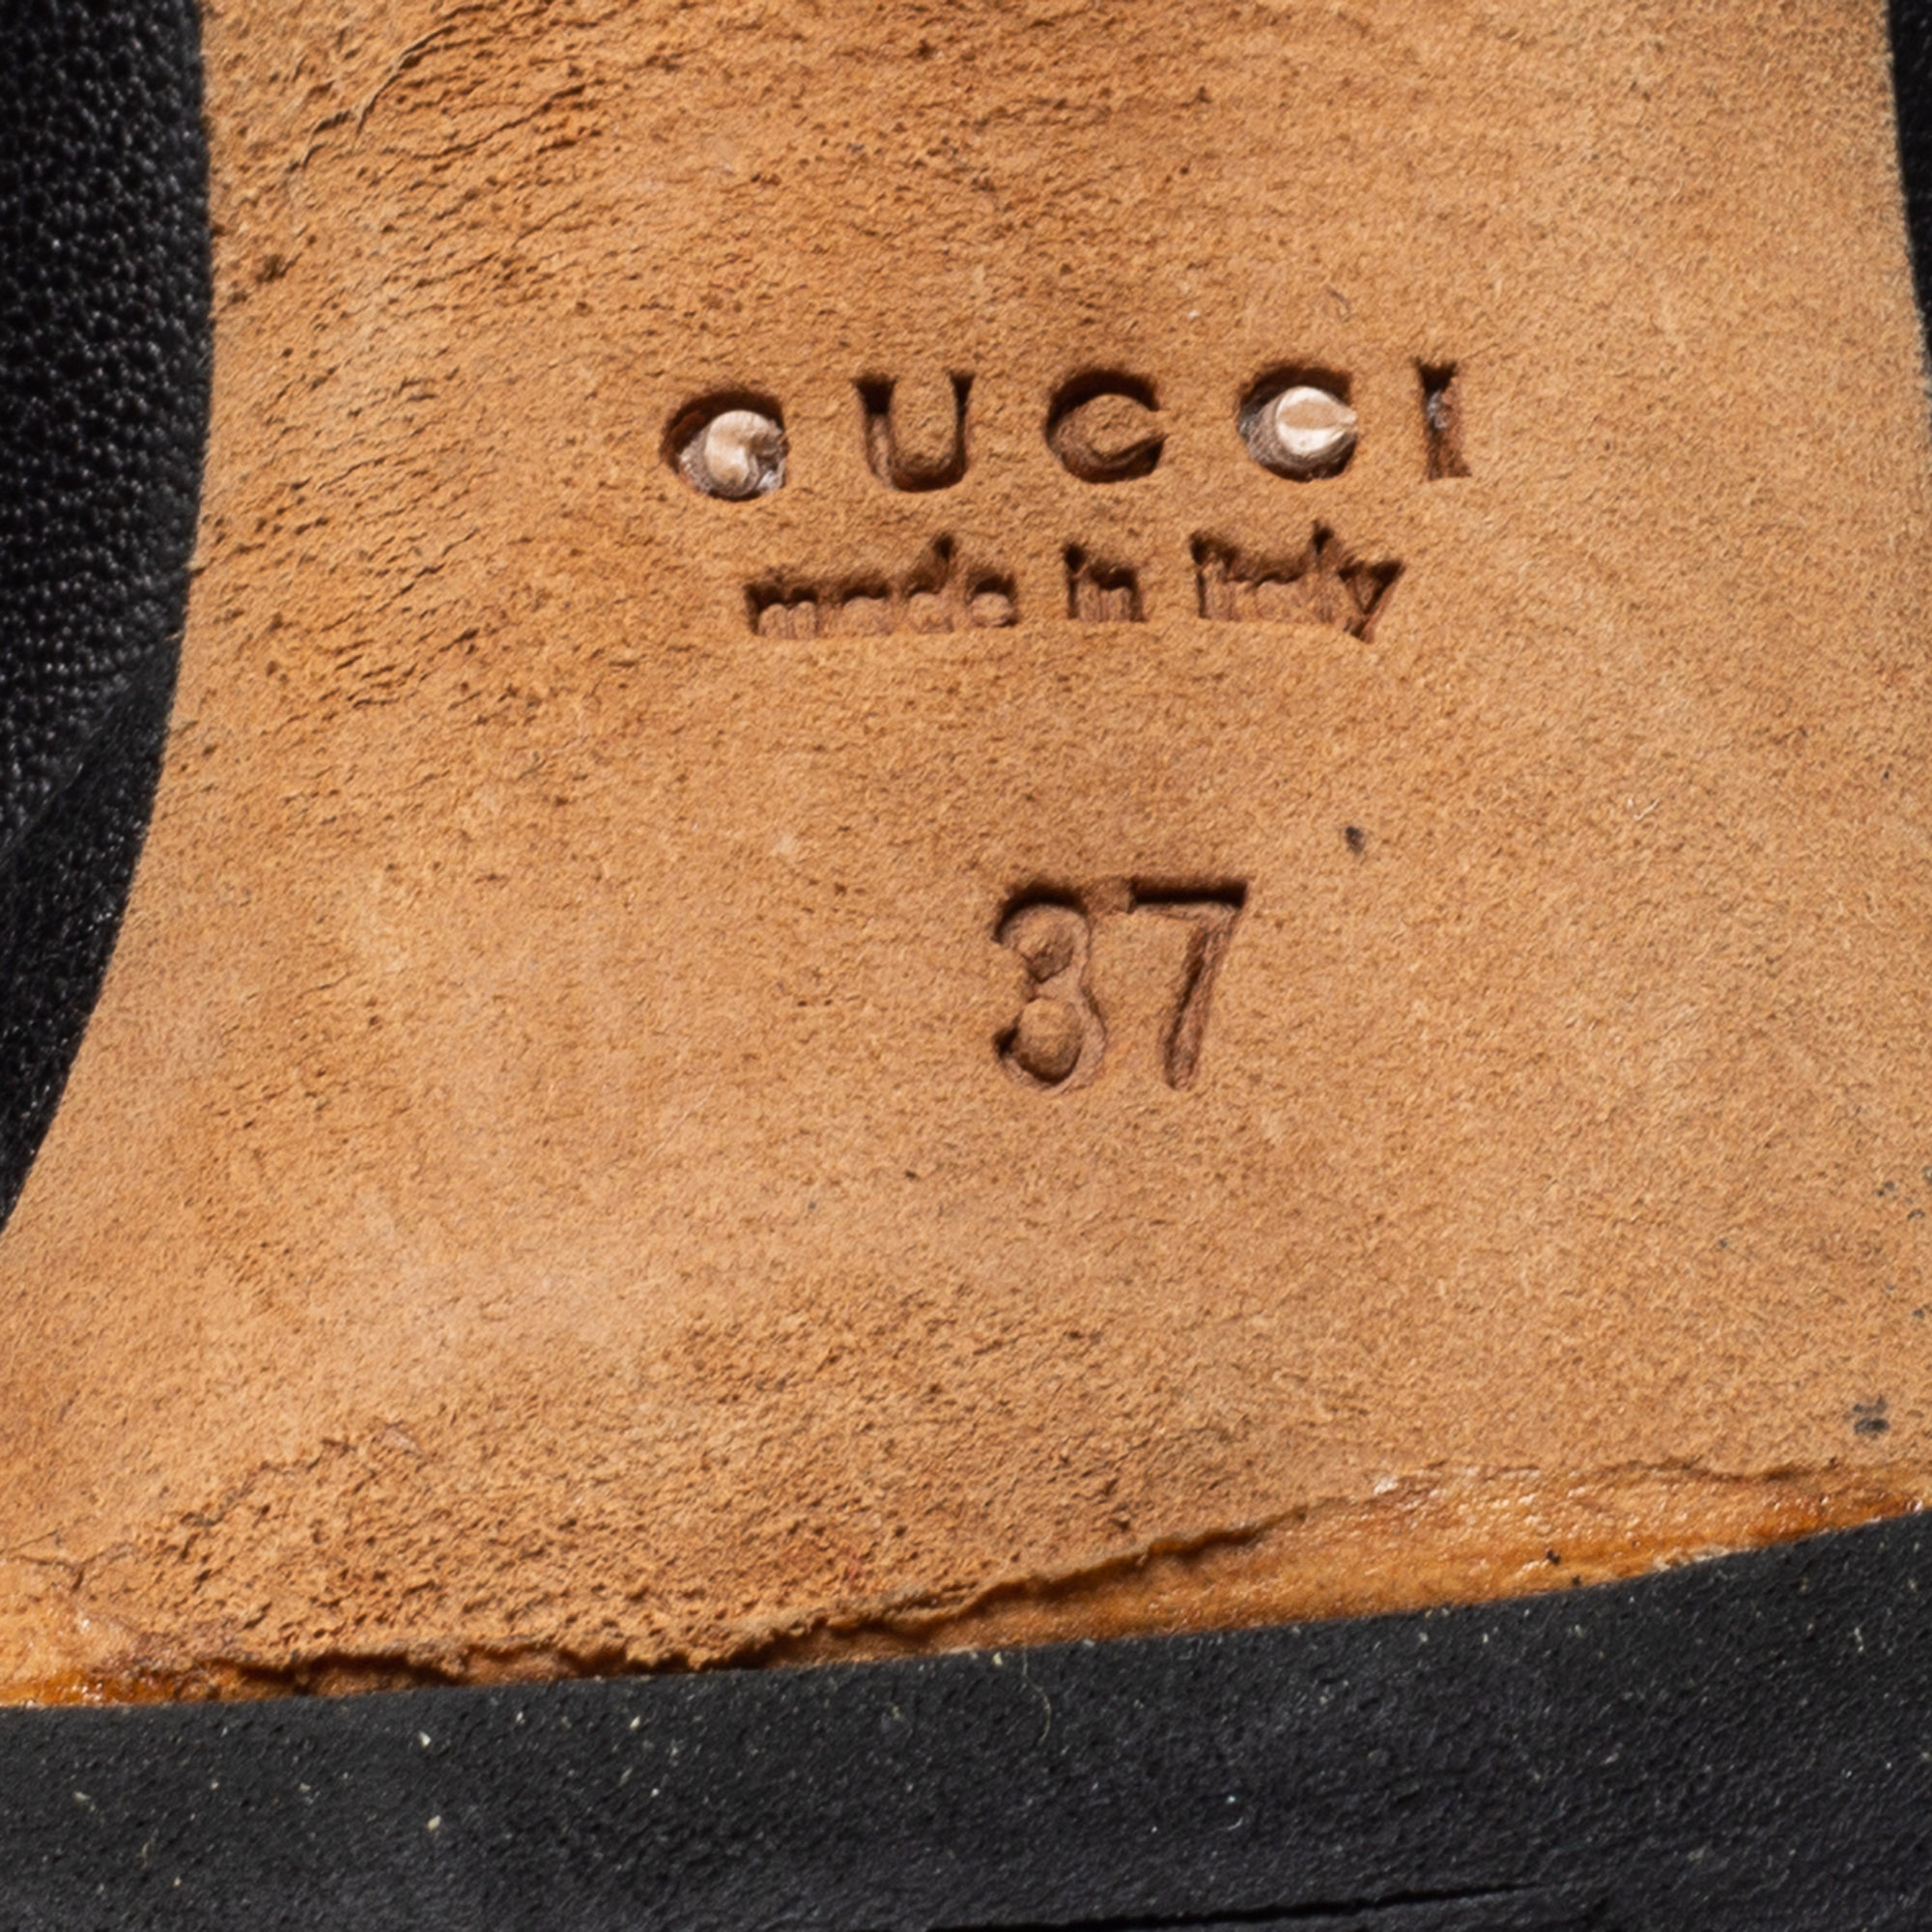 Gucci Black Leather Platform Pumps Size 37